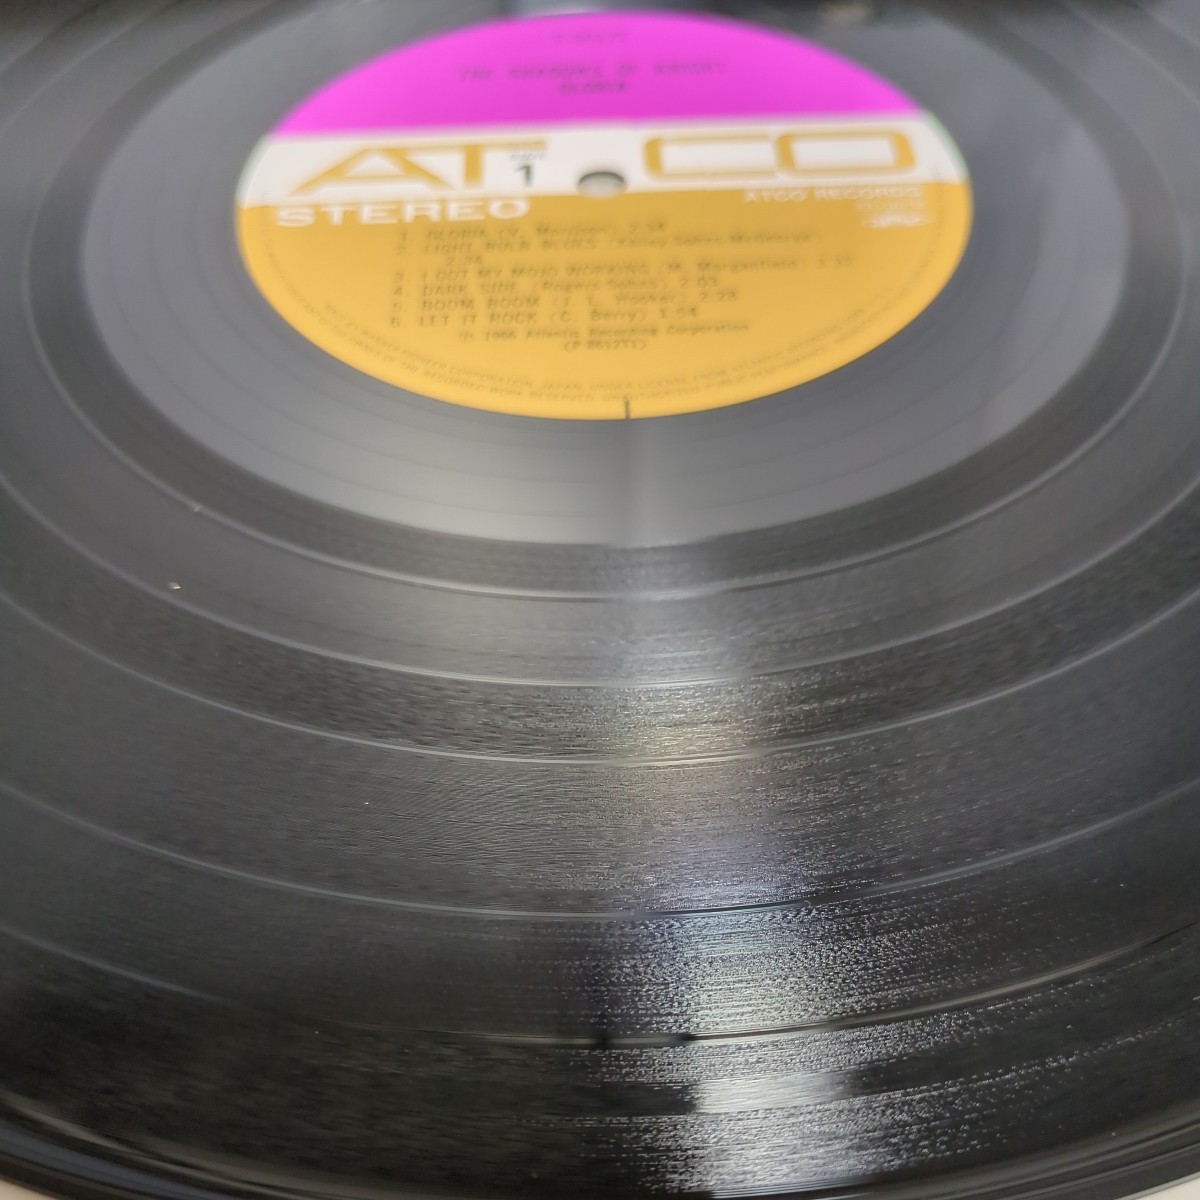 gloria shadows of knight グロリア シャドウズ・オブ・ナイト 青春秘蔵盤 analog record レコード LP アナログ vinyl_画像8